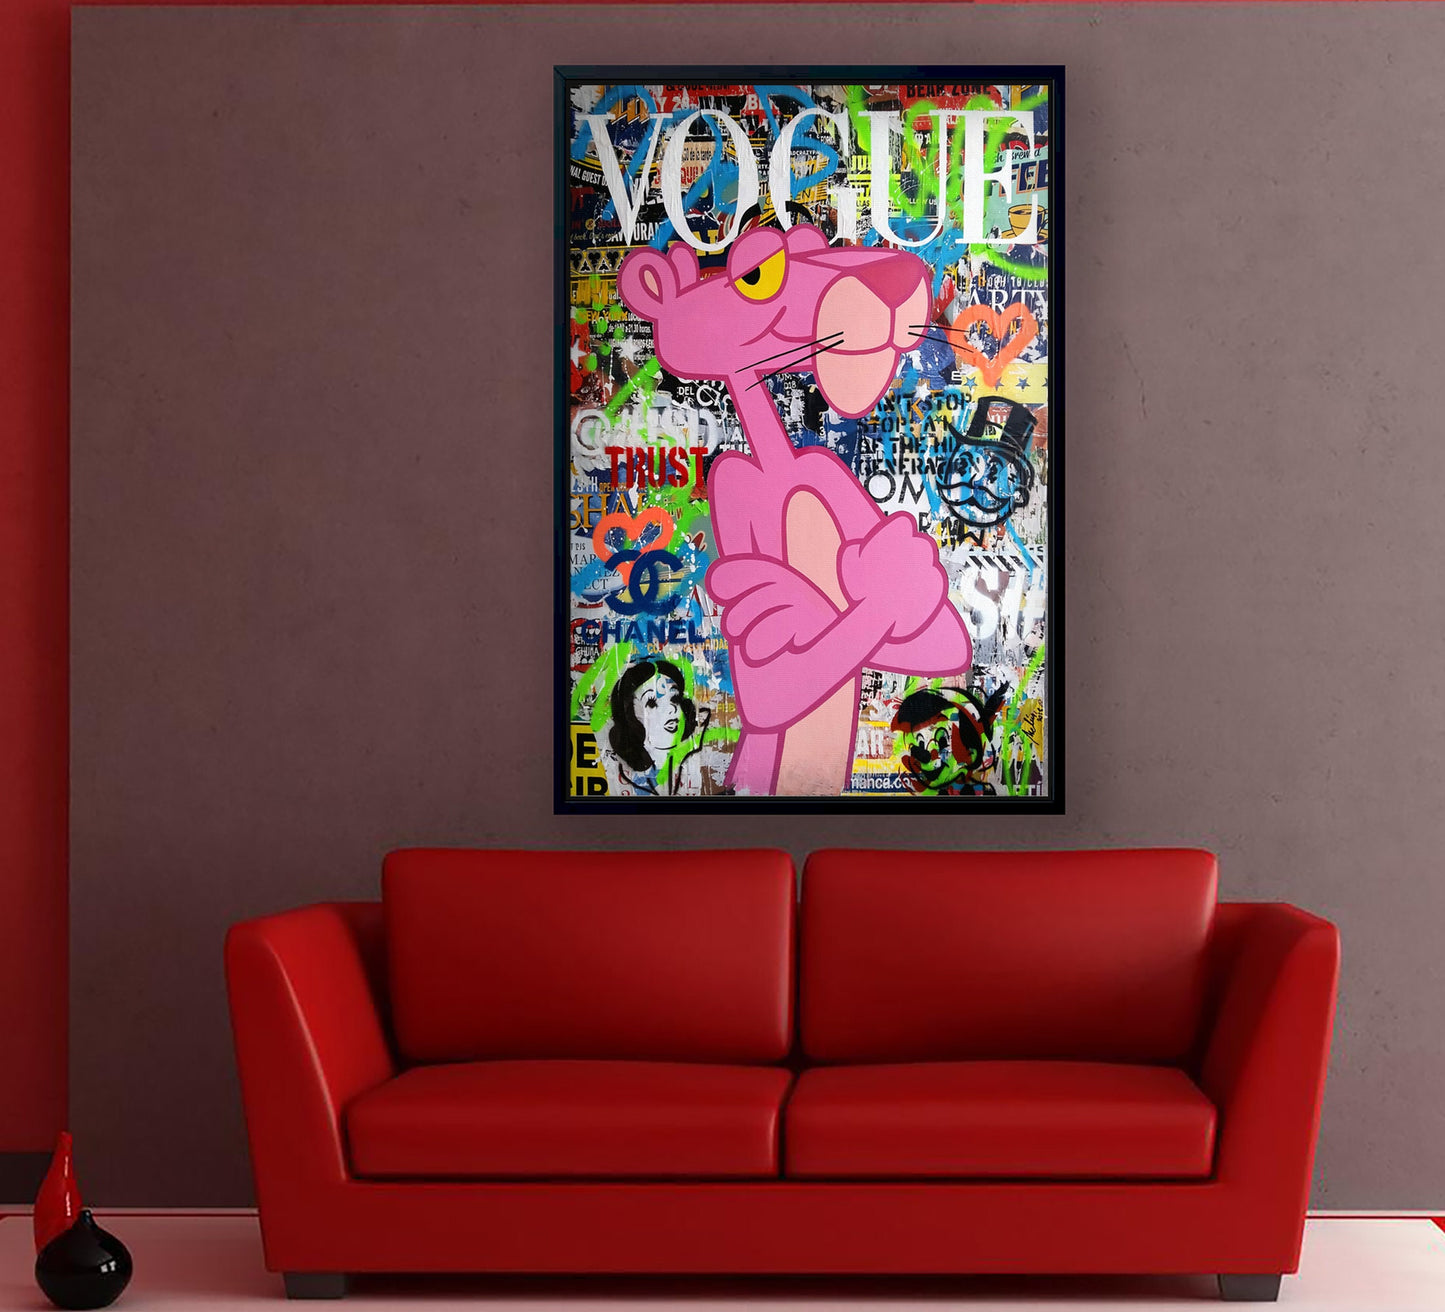 Pink Panther Vogue